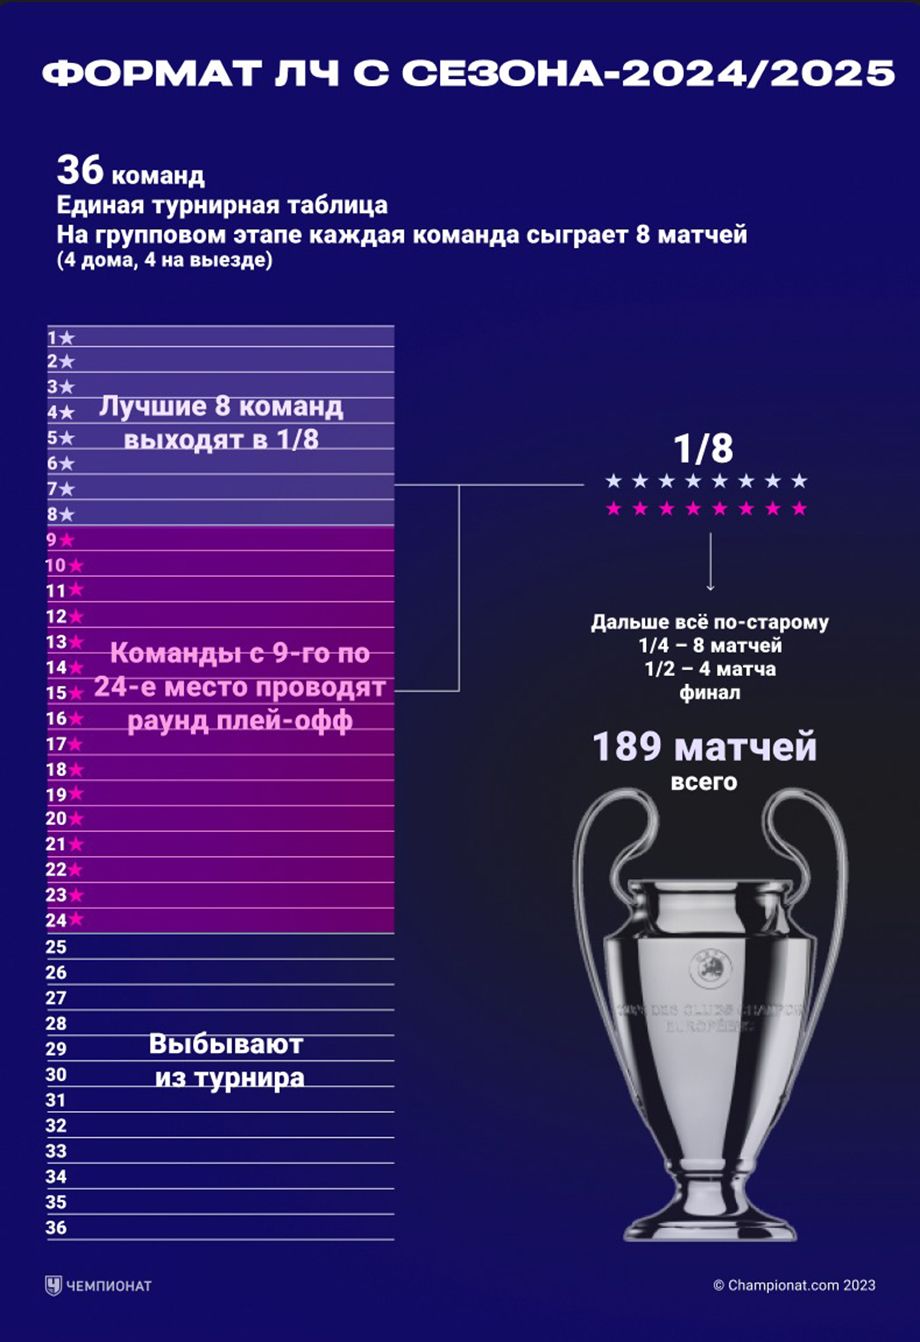 Champions League-indeling vanaf seizoen 2024/2025